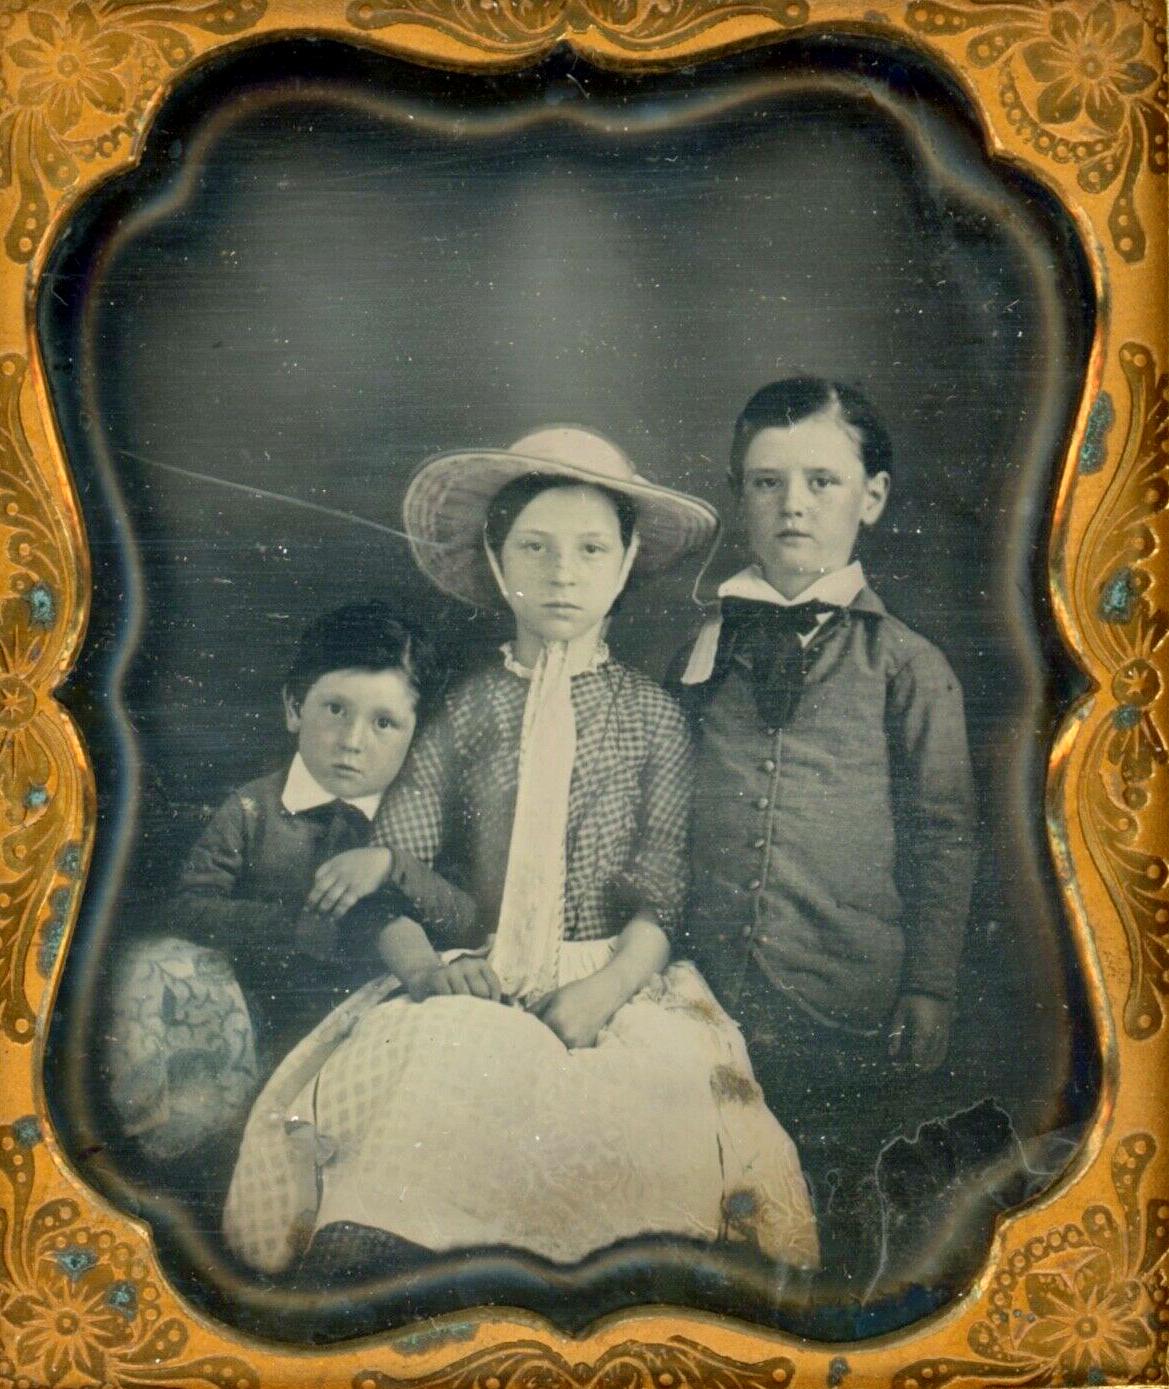 1840s siblings